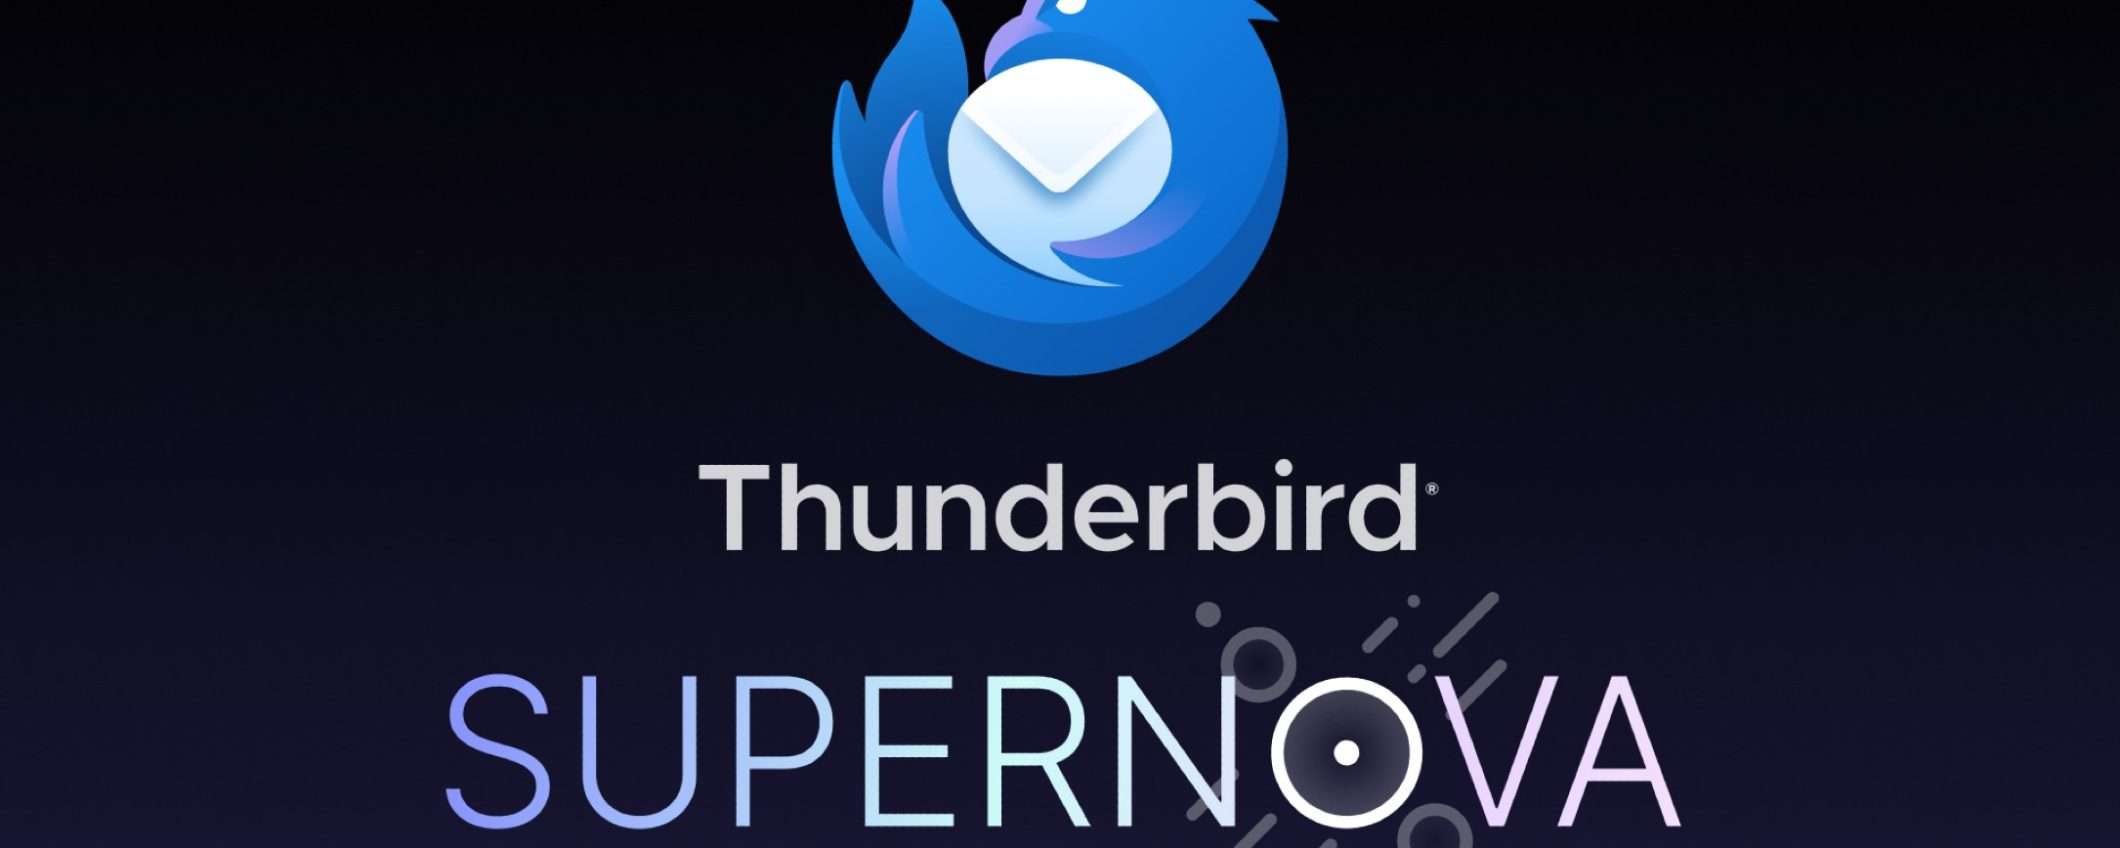 Mozilla Thunderbird: rivoluzione completa con update Supernova